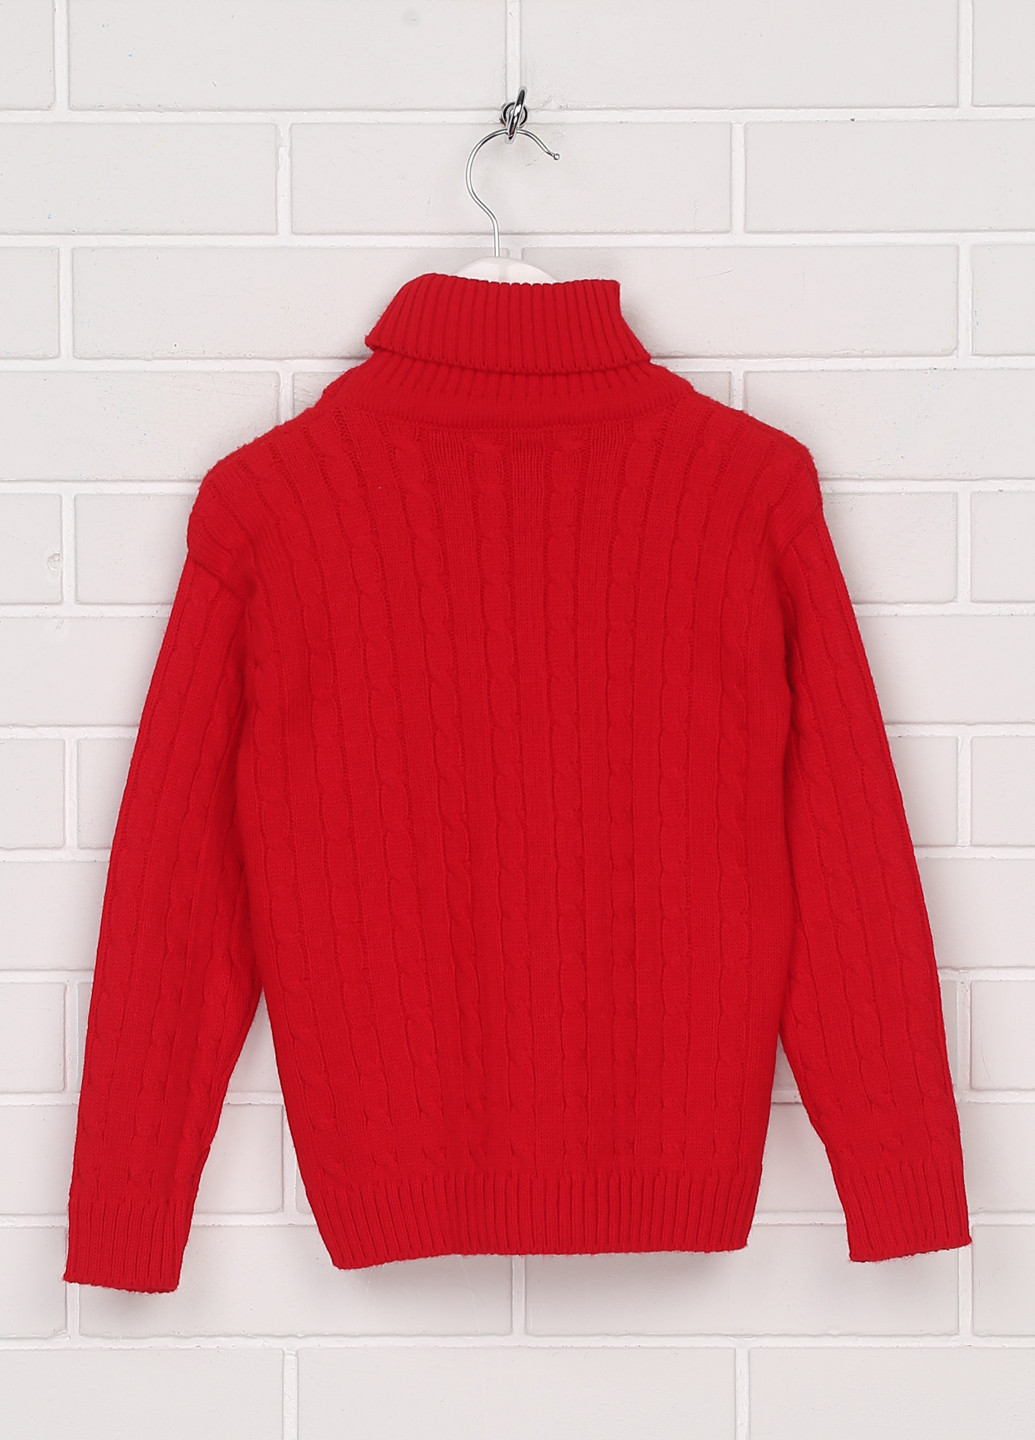 Красный демисезонный свитер Krakus